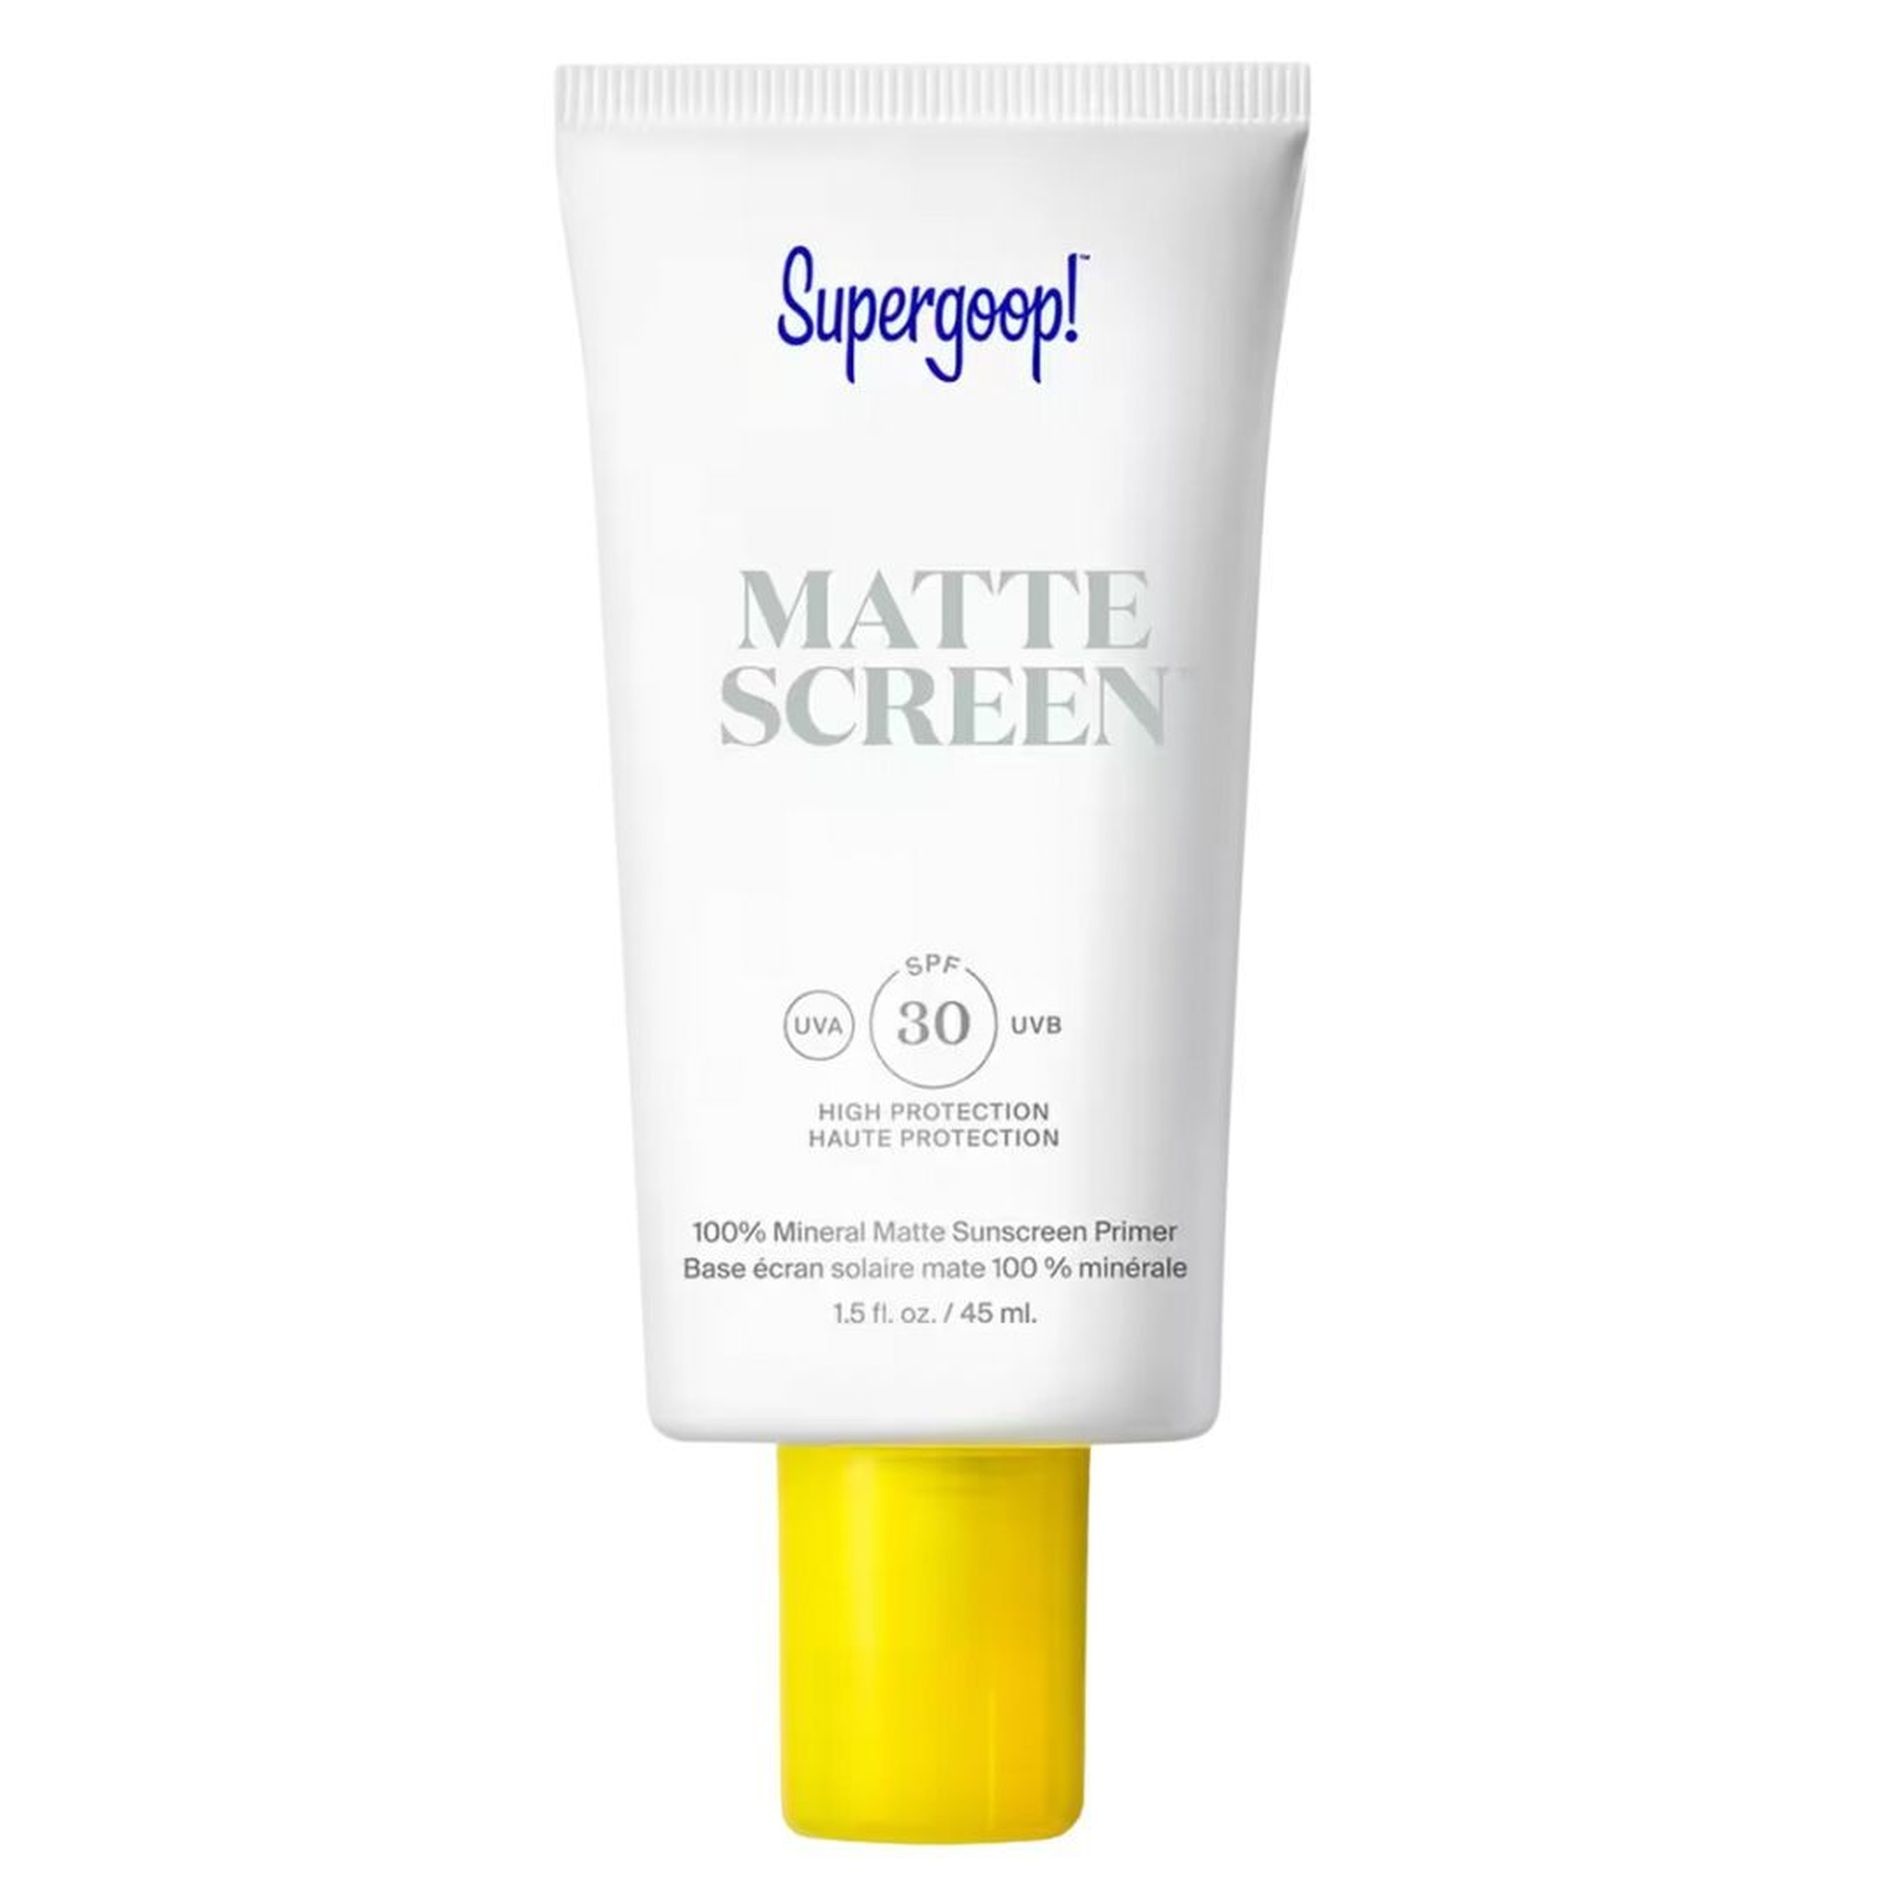 Mattescreen sunscreen by Supergoop